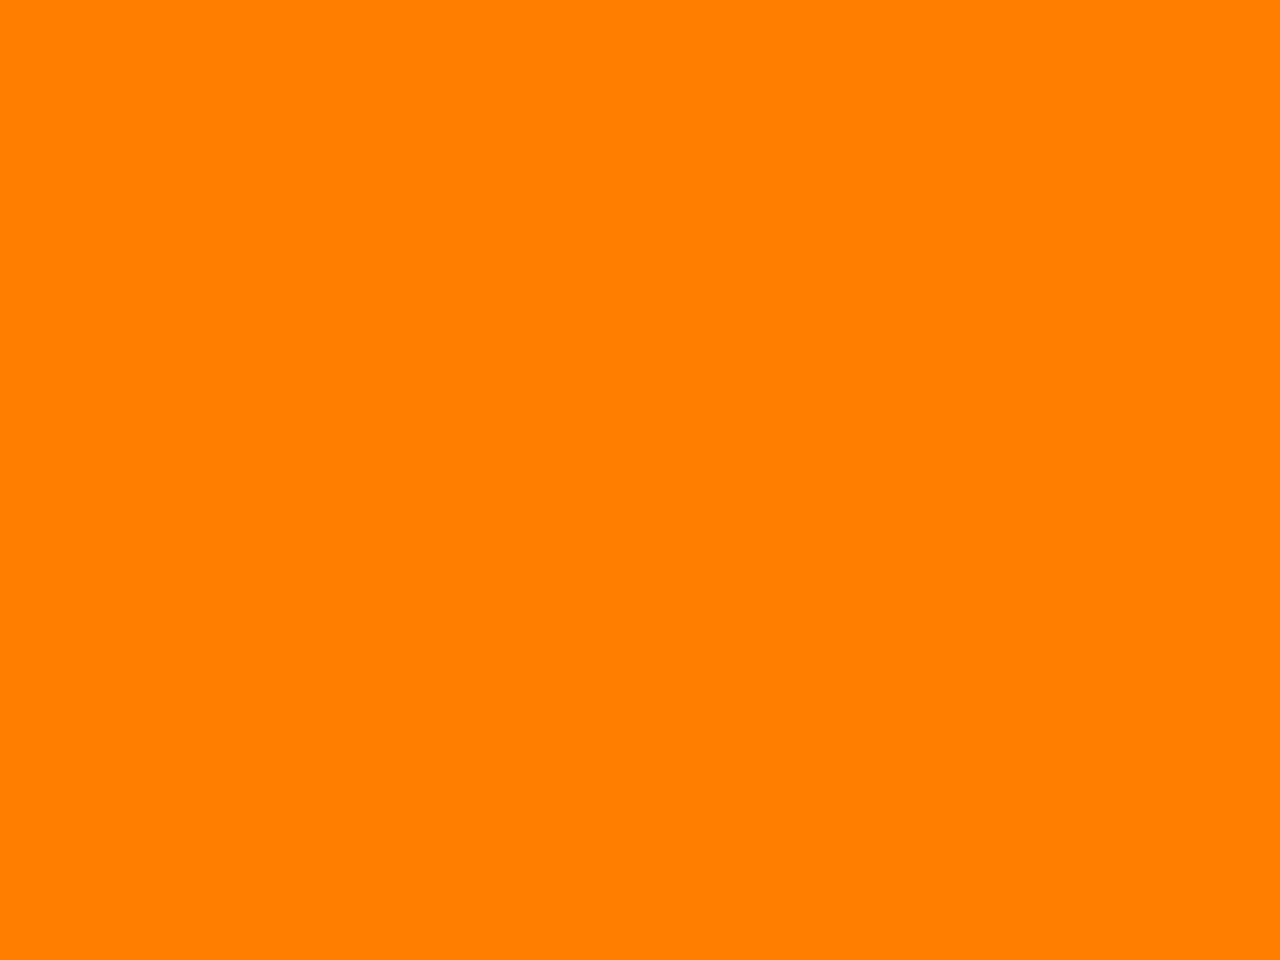 1280x960 Amber Orange Solid Color Background